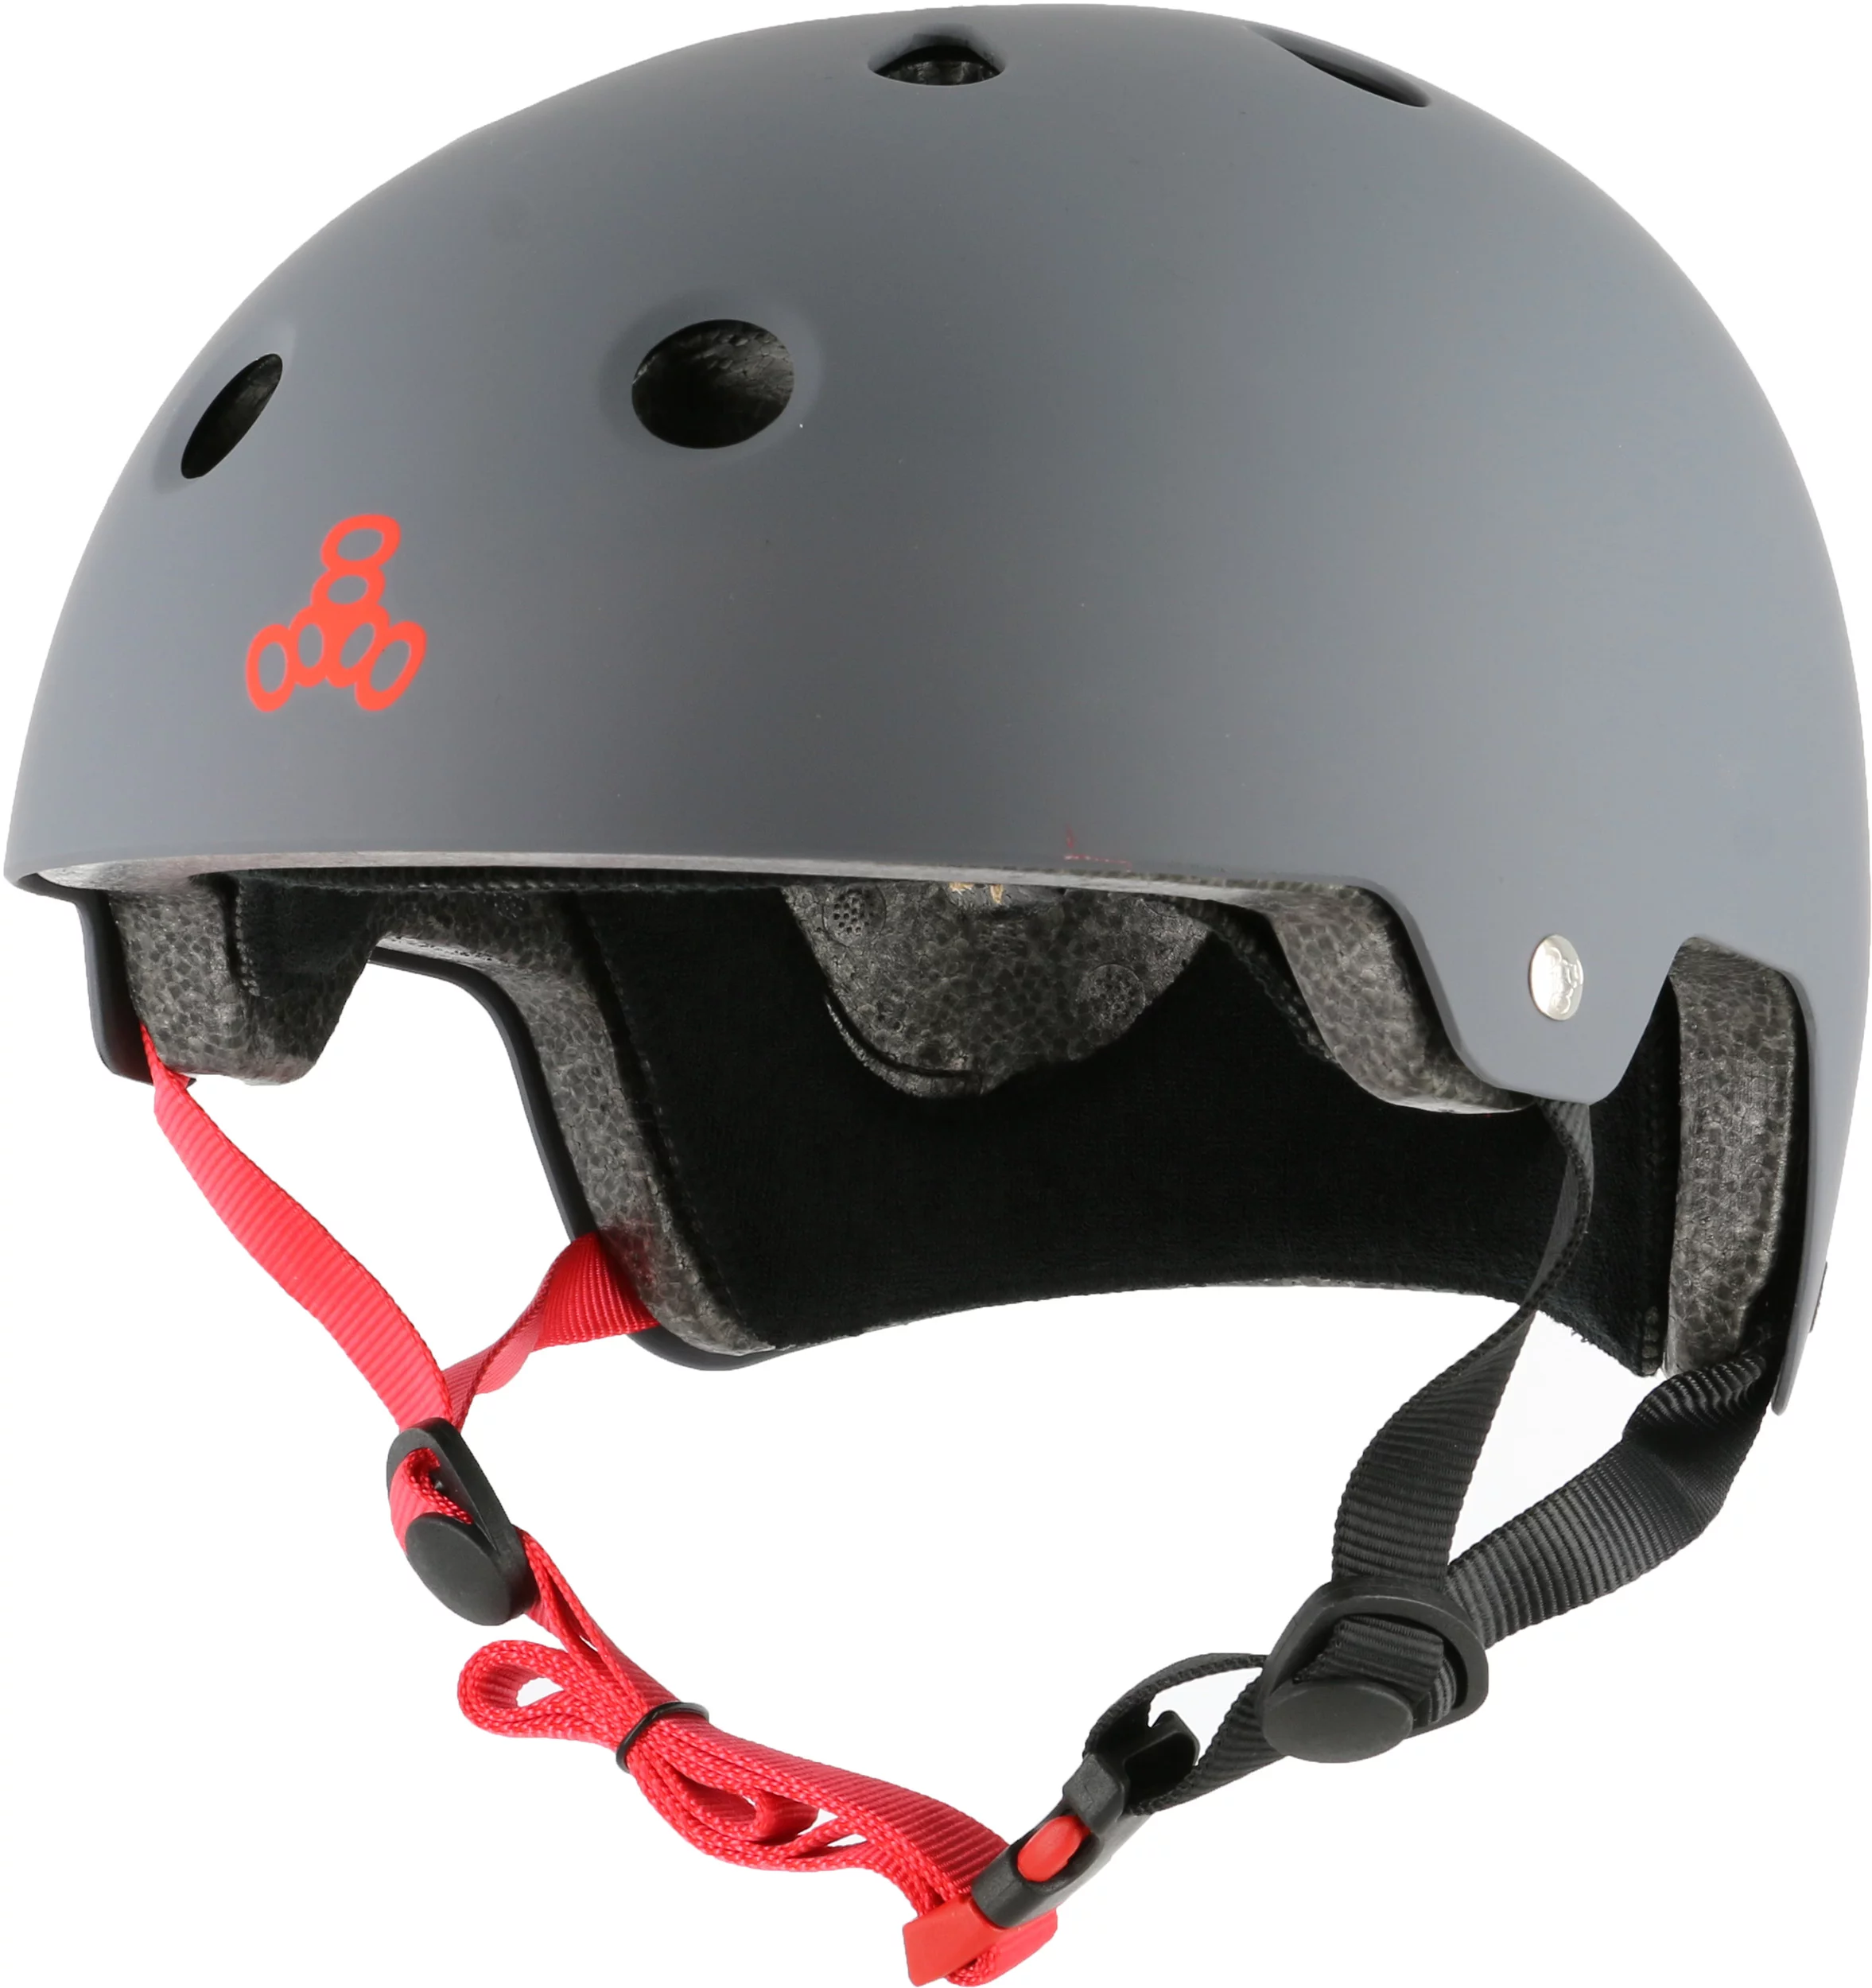 Triple 8 Brainsaver Helmet with EPS Liner Black Rubber 